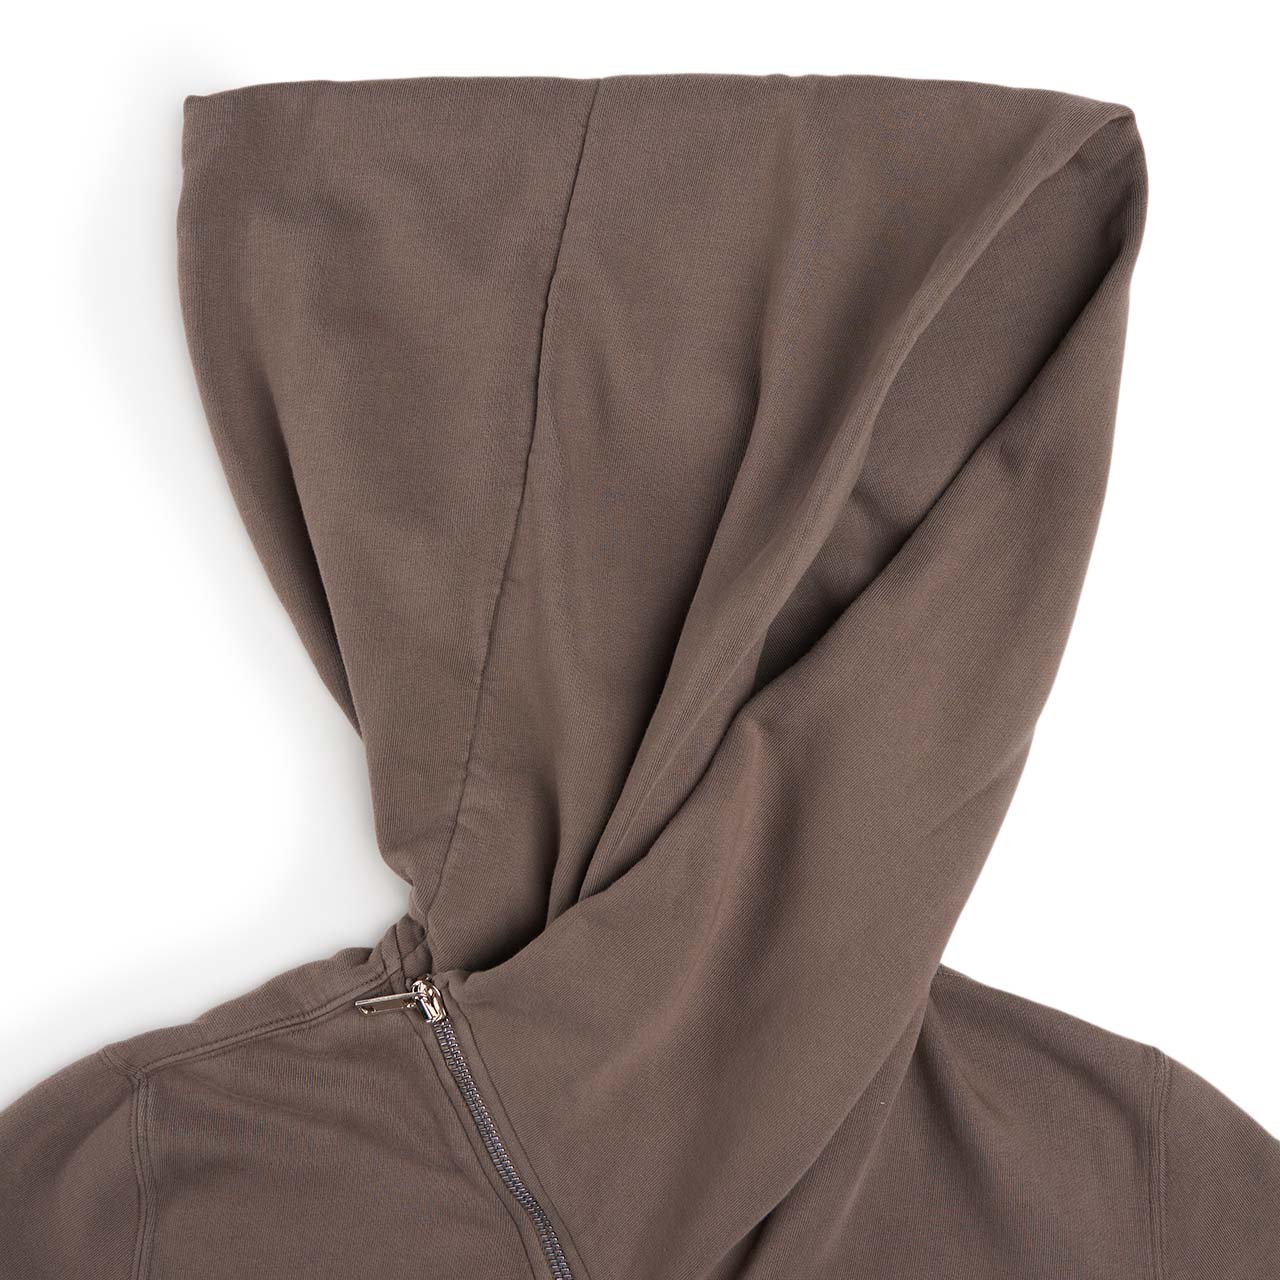 rick owens drkshdw mountain hoodie (brown)